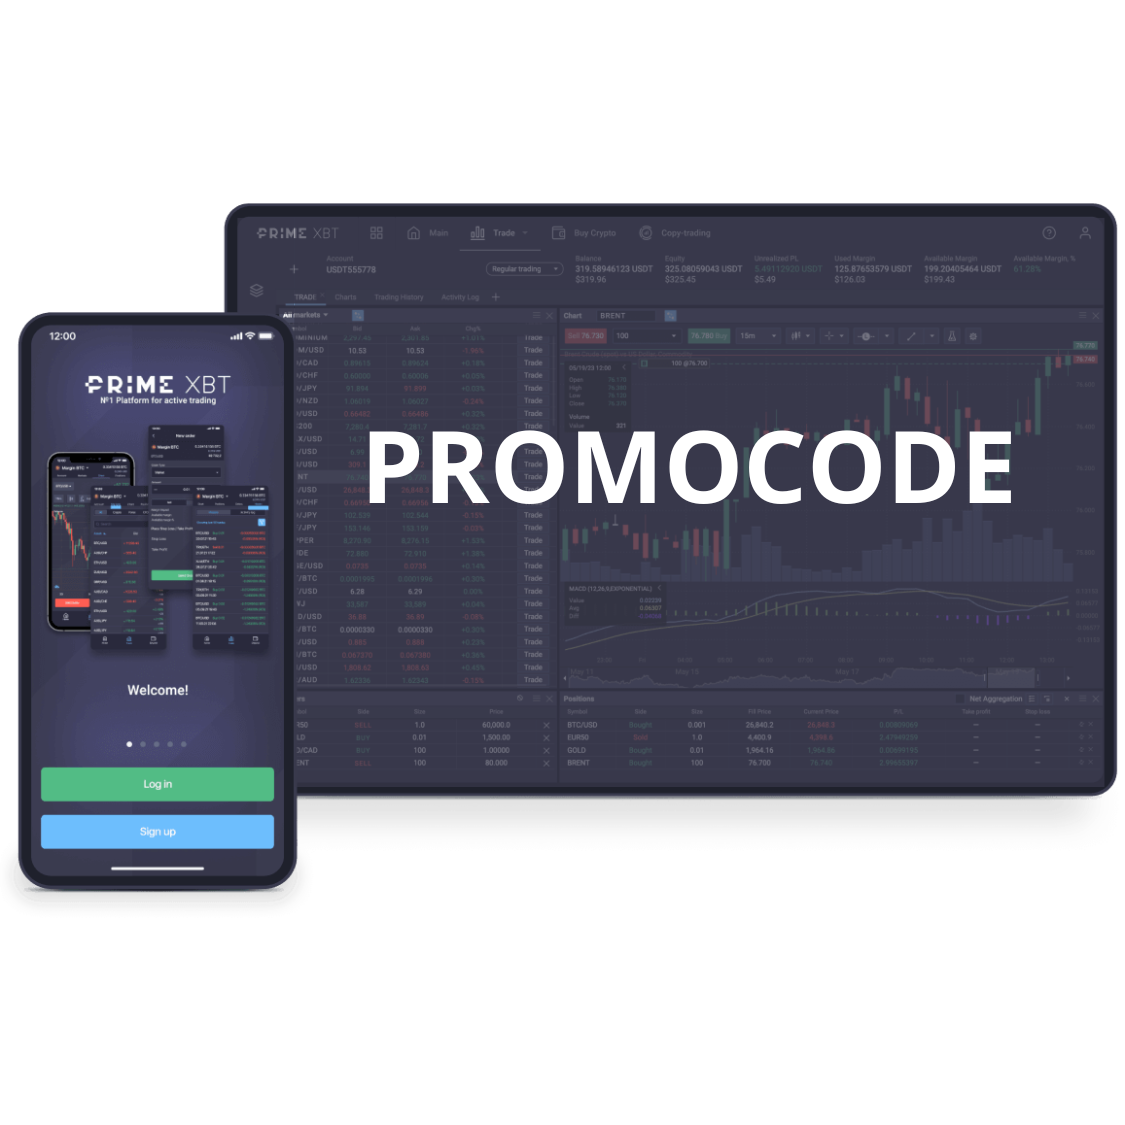 PrimeXBT promocode.